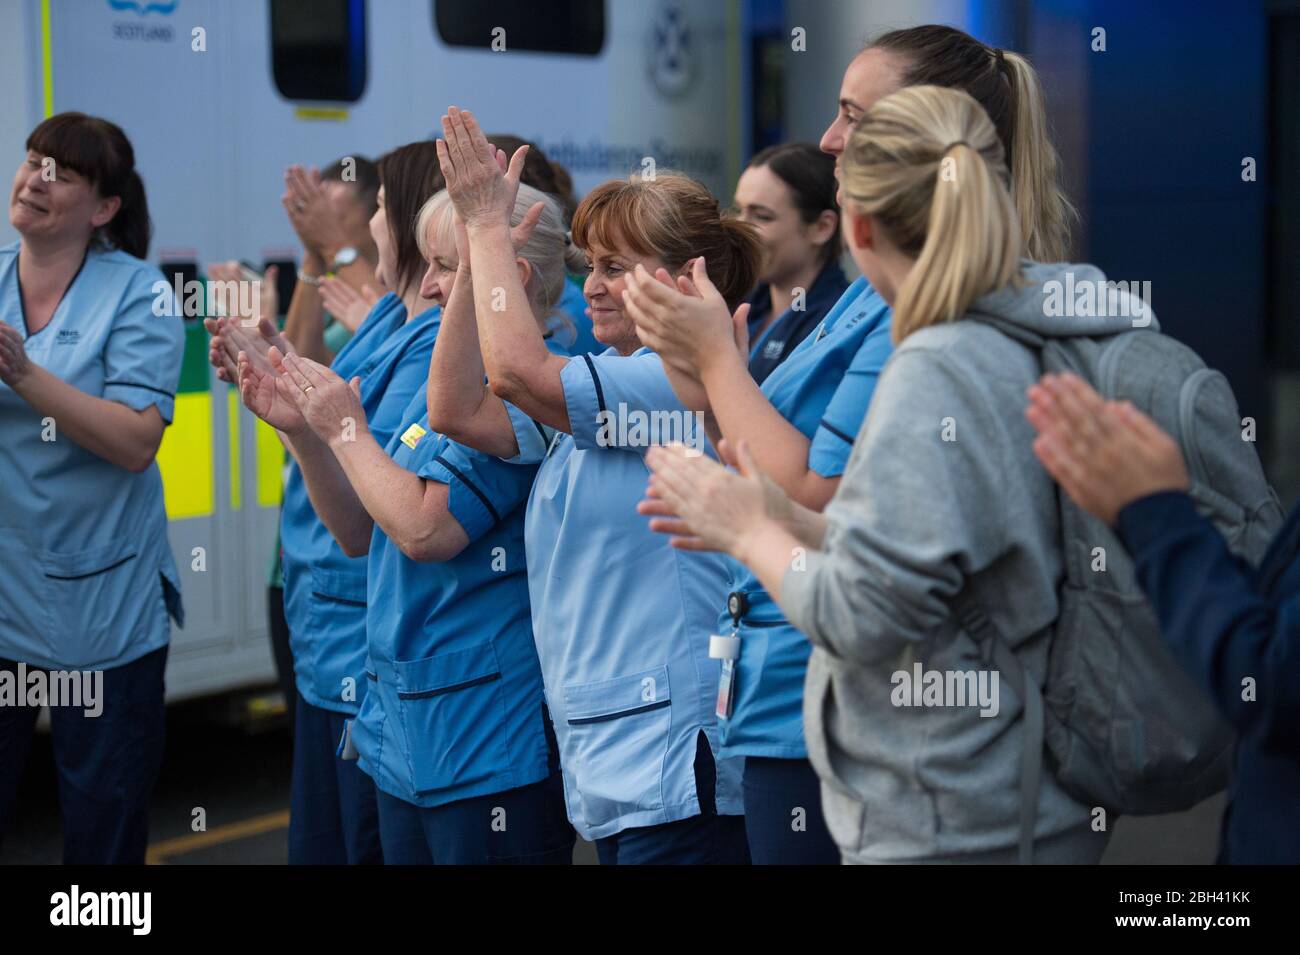 Glasgow, Reino Unido. 23 de abril de 2020. En la foto: El personal de NHS y los trabajadores de emergencia muestran su aprecio durante la campaña "Clap for our carers" - un tributo semanal a NHS y trabajadores clave durante el brote de coronavirus (COVID-19). Se anima al público a aplaudir al personal de NHS y a otros trabajadores clave de sus hogares todos los jueves a las 20.00 h. Hasta la fecha, la pandemia del Coronavirus (COVID-19) ha infectado a más de 2.6 millones de personas en todo el mundo, y en el Reino Unido ha infectado a 138,078 y ha matado a 18,738. Crédito: Colin Fisher/Alamy Live News Foto de stock